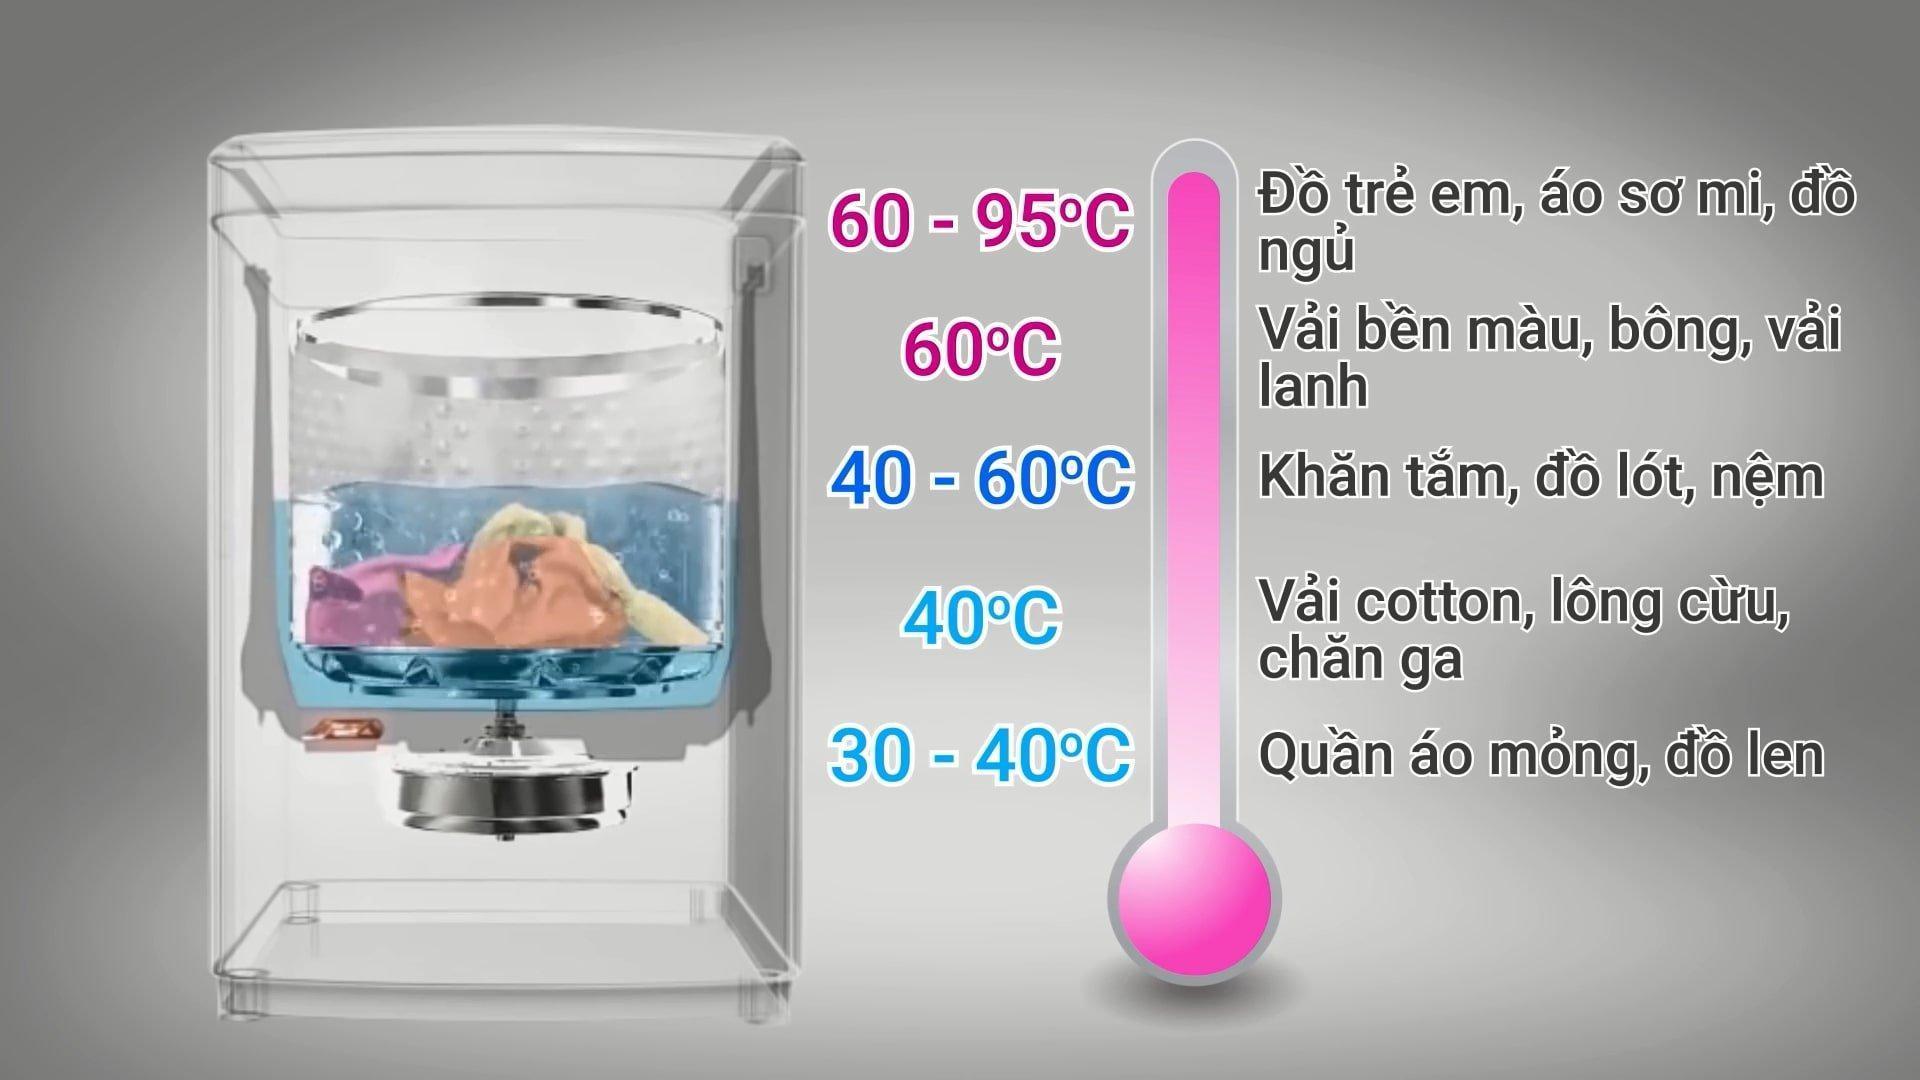 Cách sử dụng máy giặt nước nóng